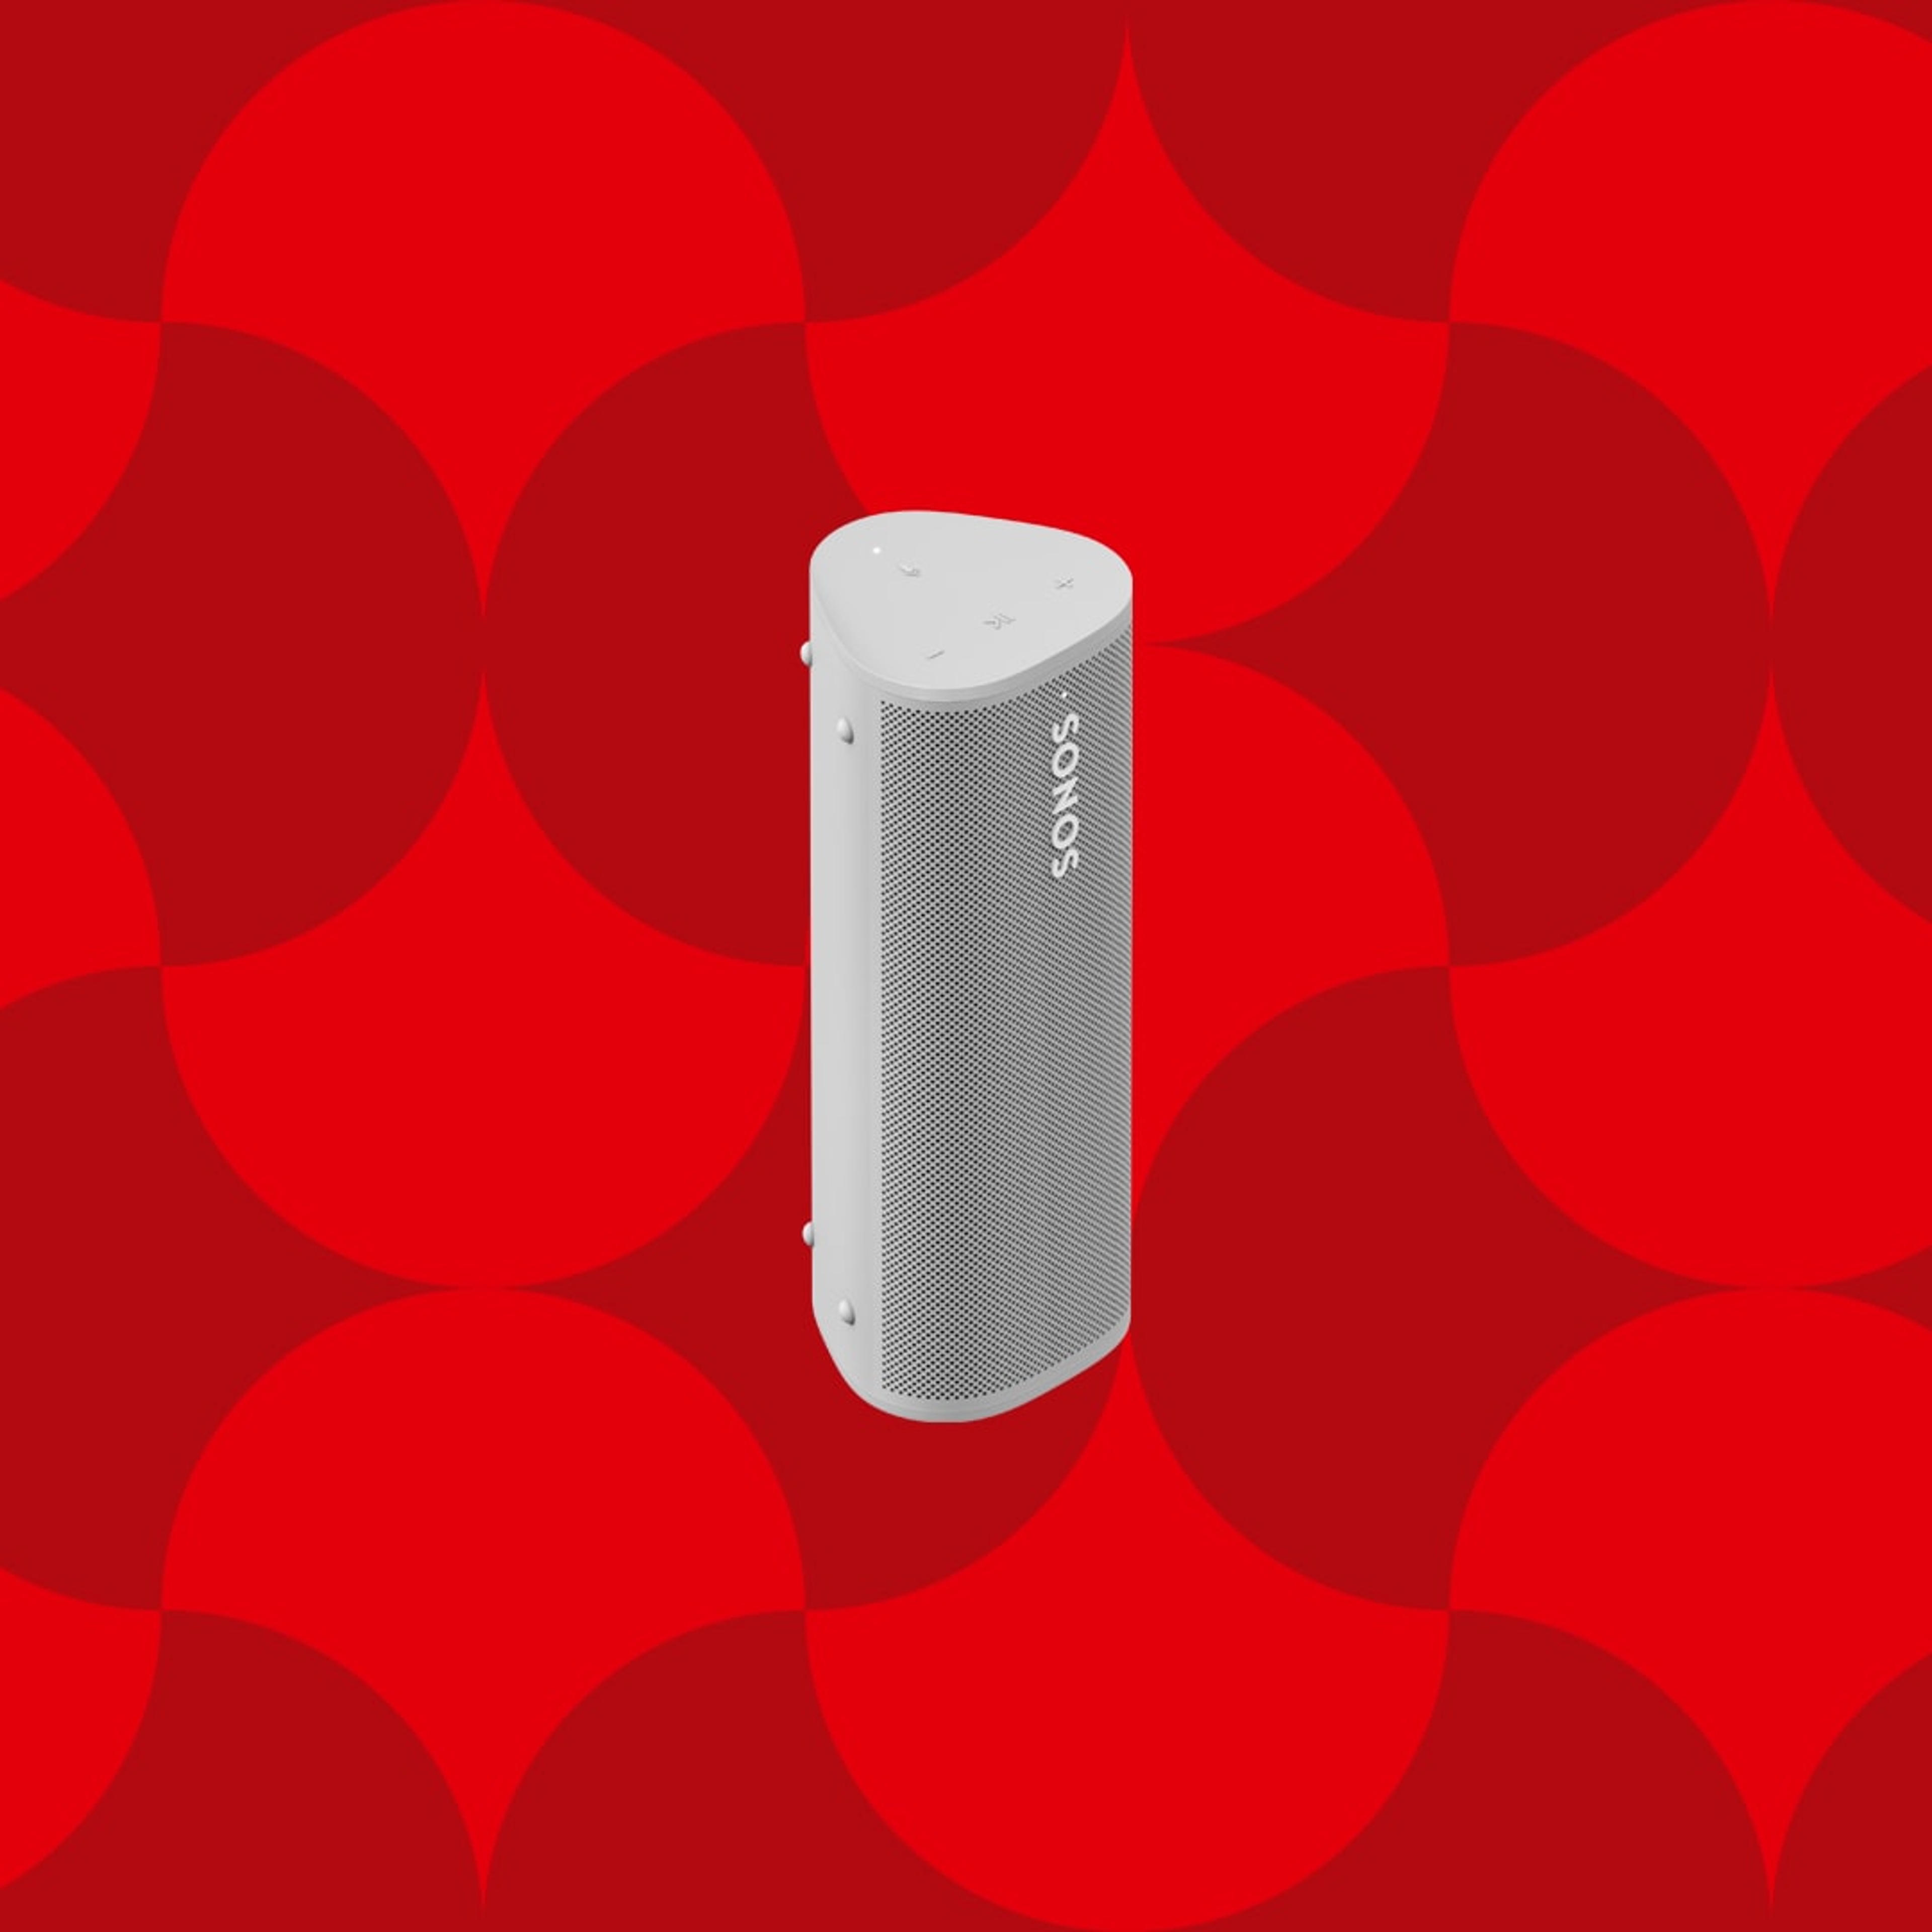 Immagine di uno speaker portatile Sonos Roam bianco su sfondo festivo con grafica rossa